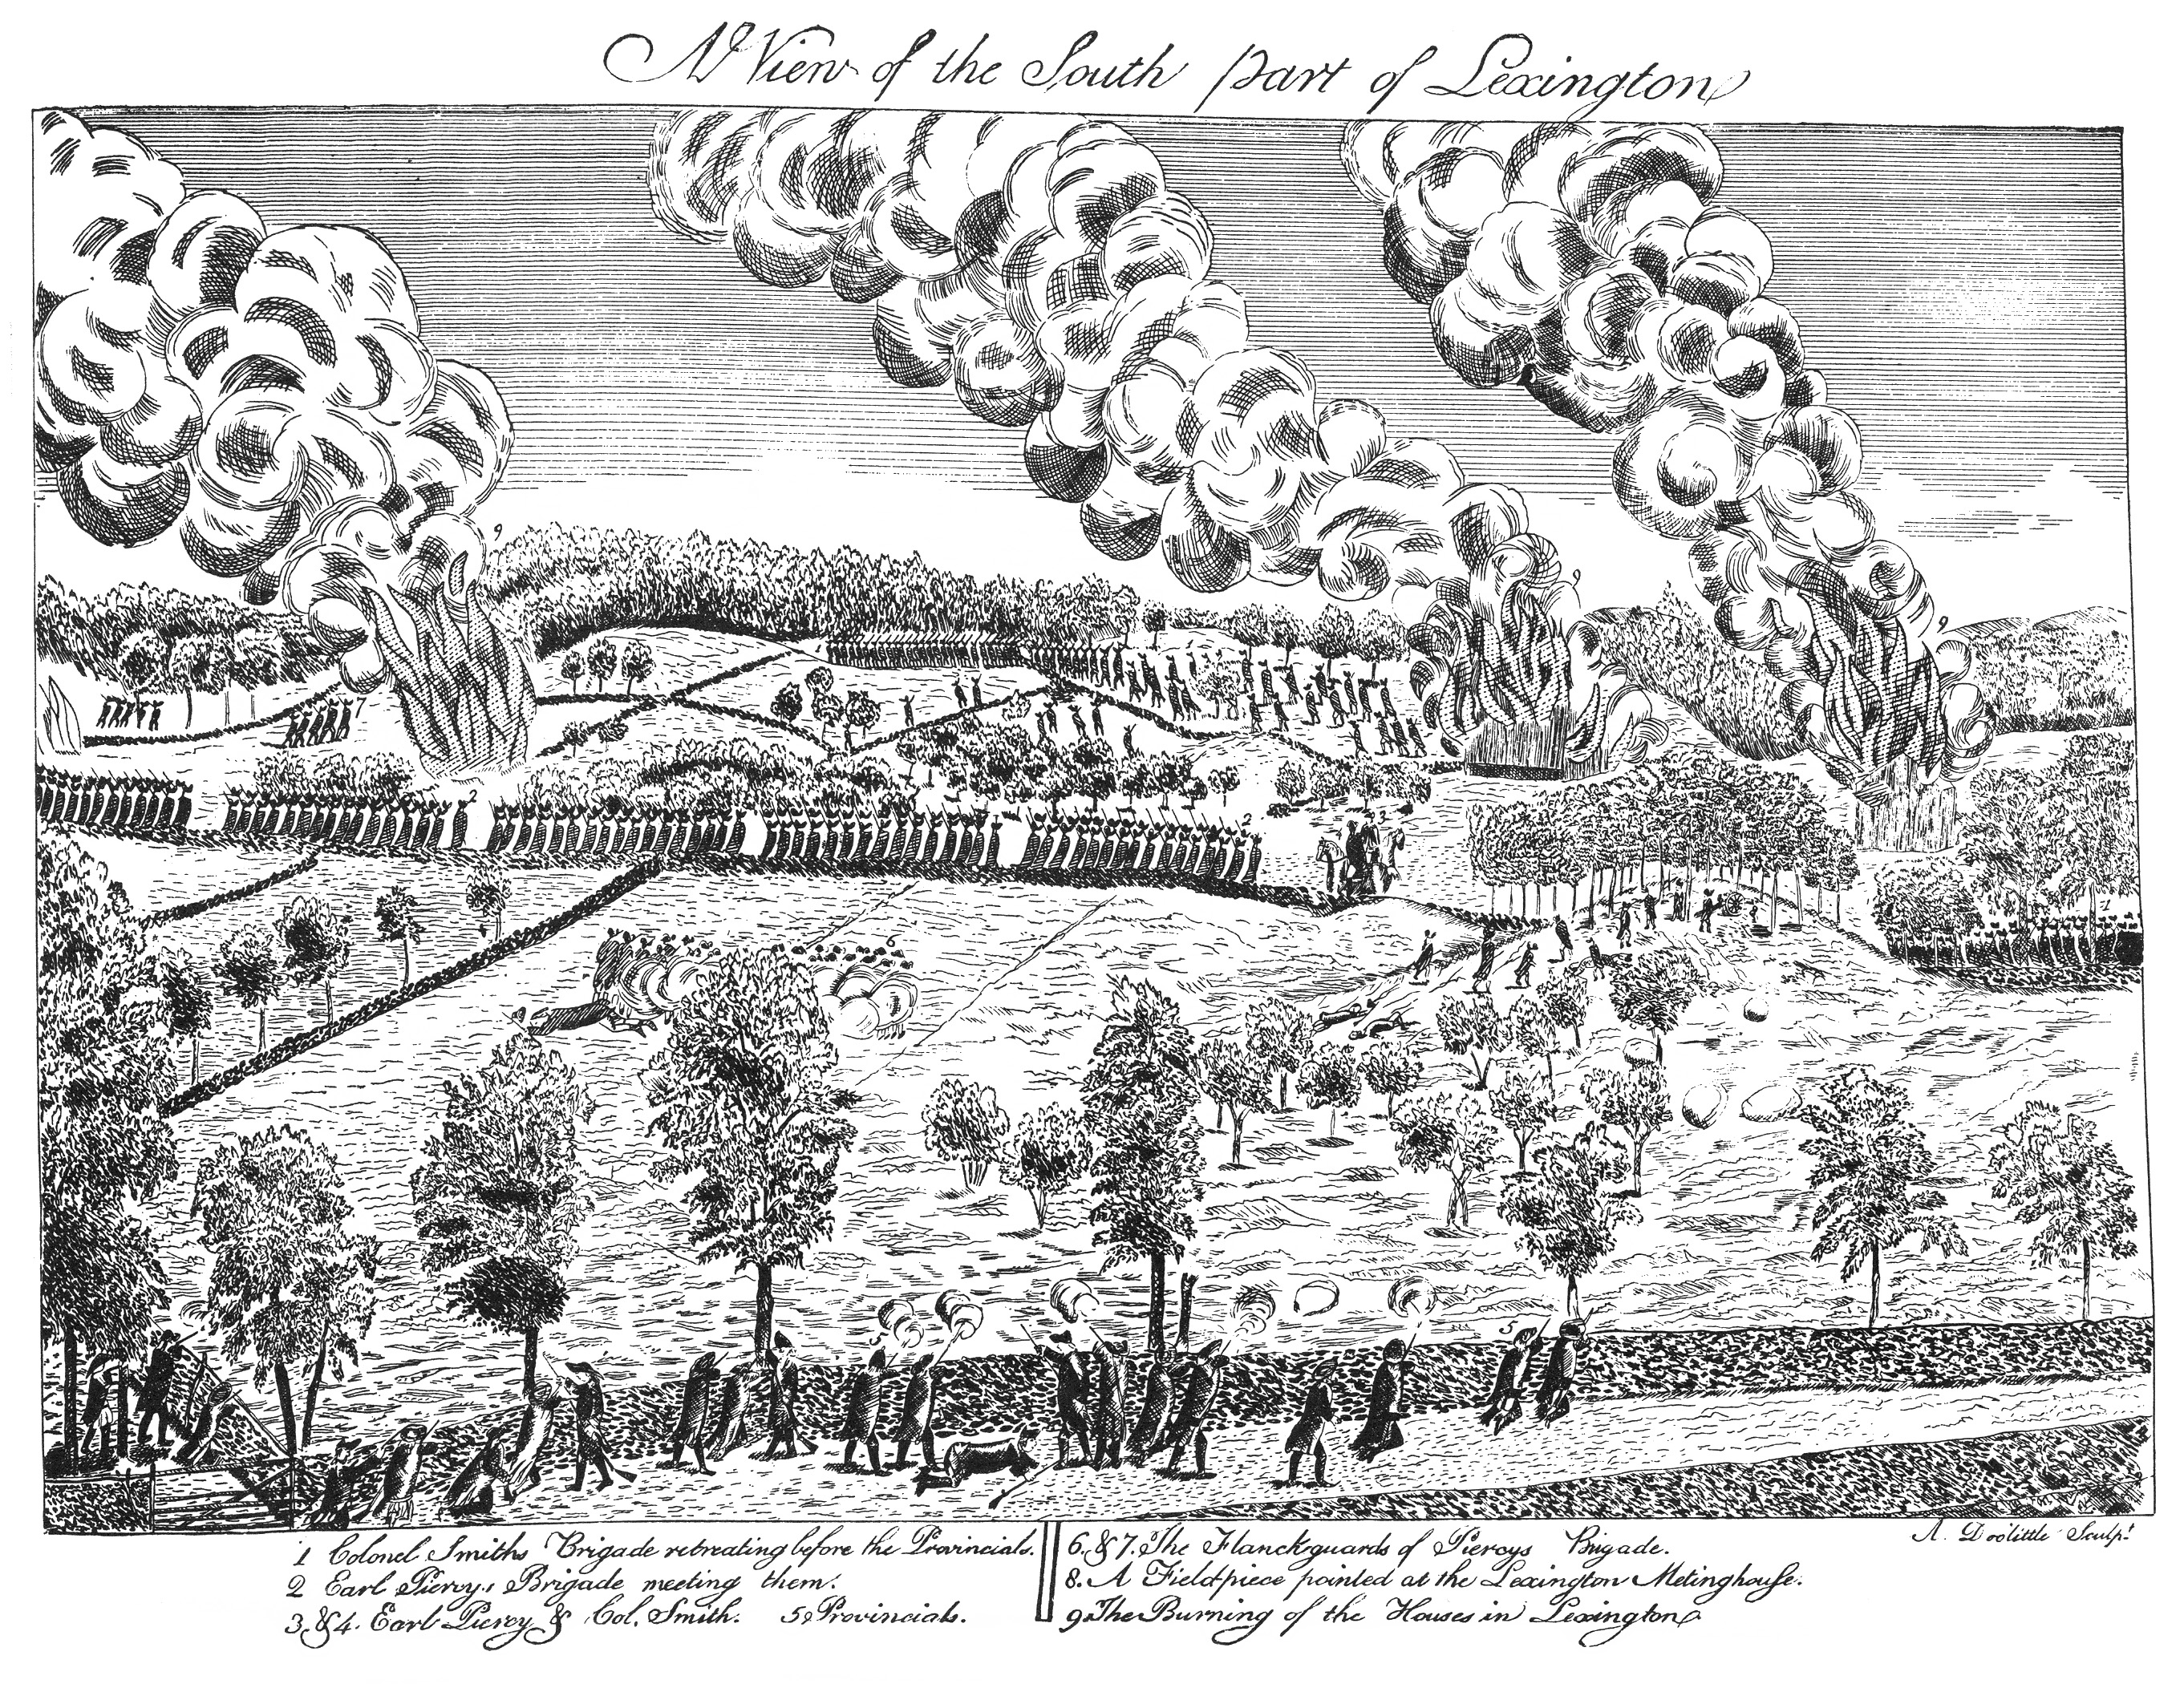 Depiction of the Battle of Lexington, April 19, 1775.